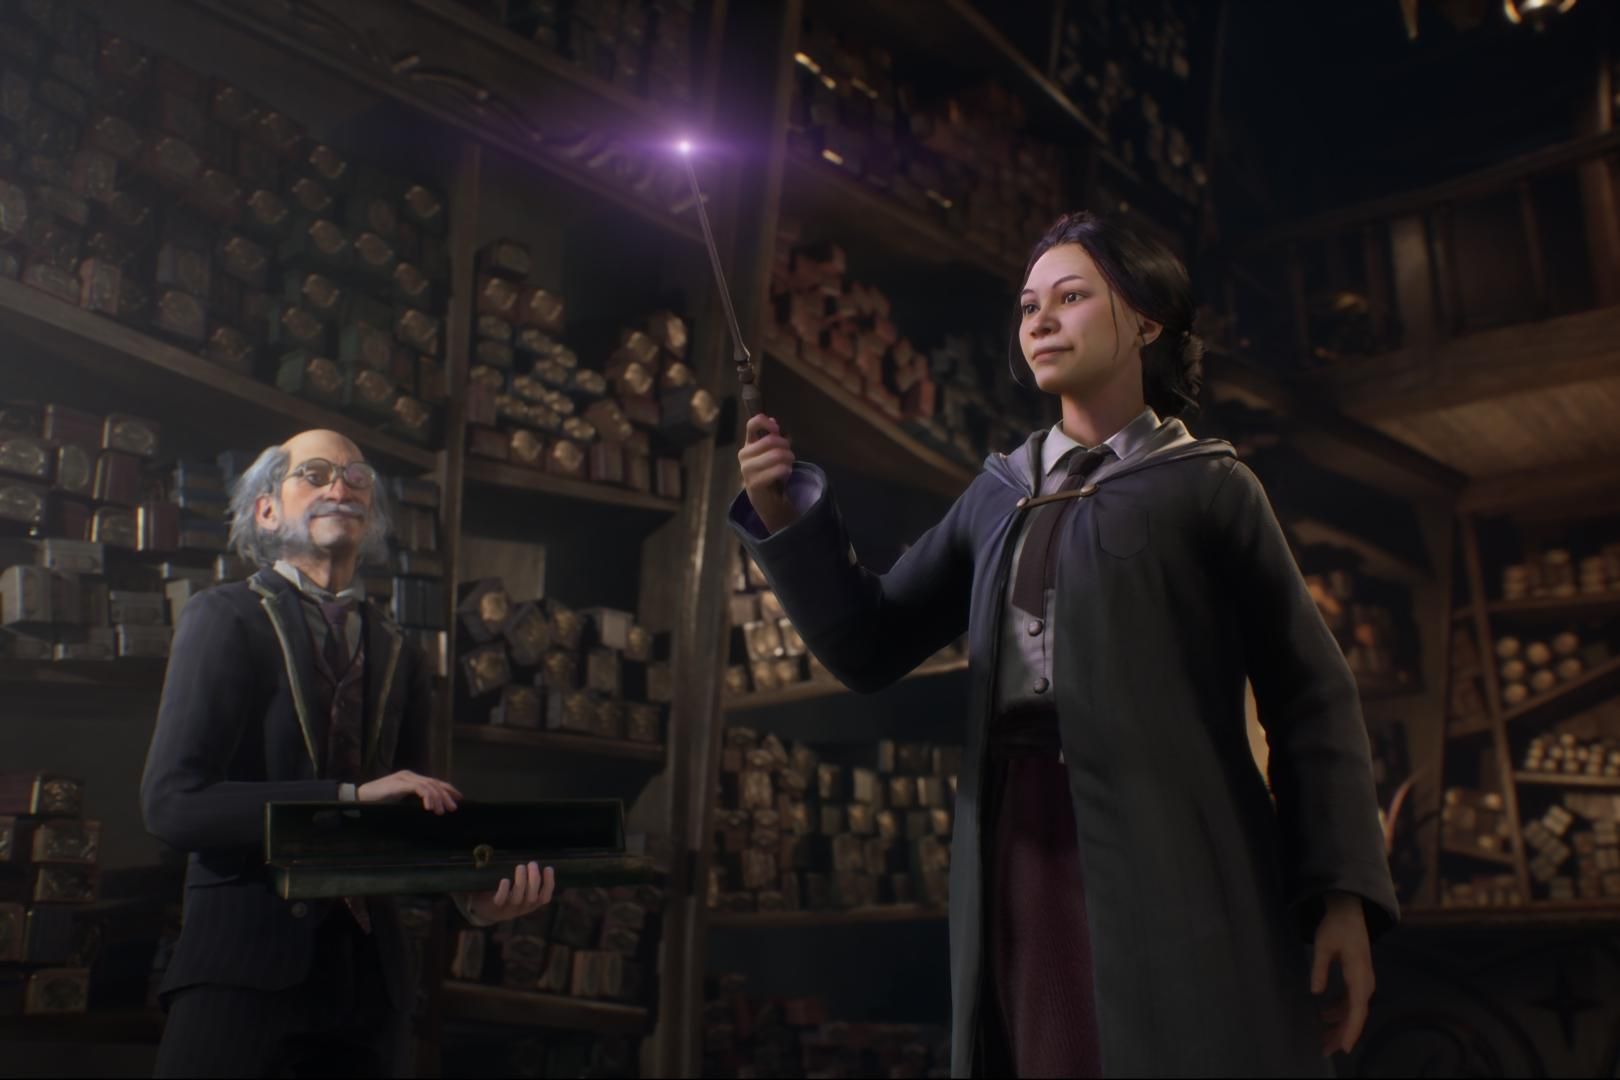 Hogwarts school: Último filme da saga Harry Potter estreia às